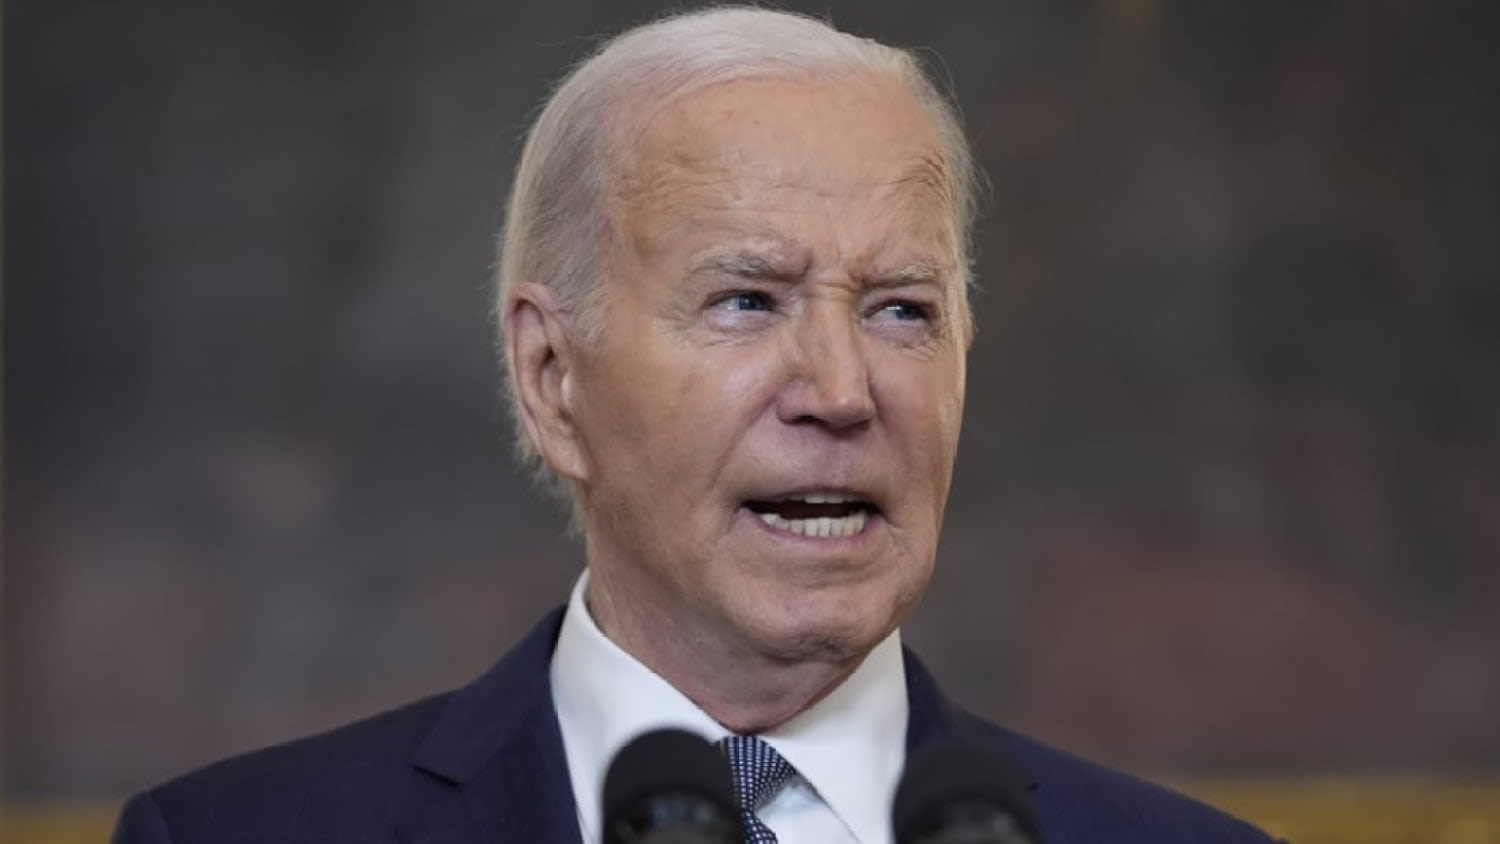 'Unprecedented': President Biden announces three-phase hostage, ceasefire deal